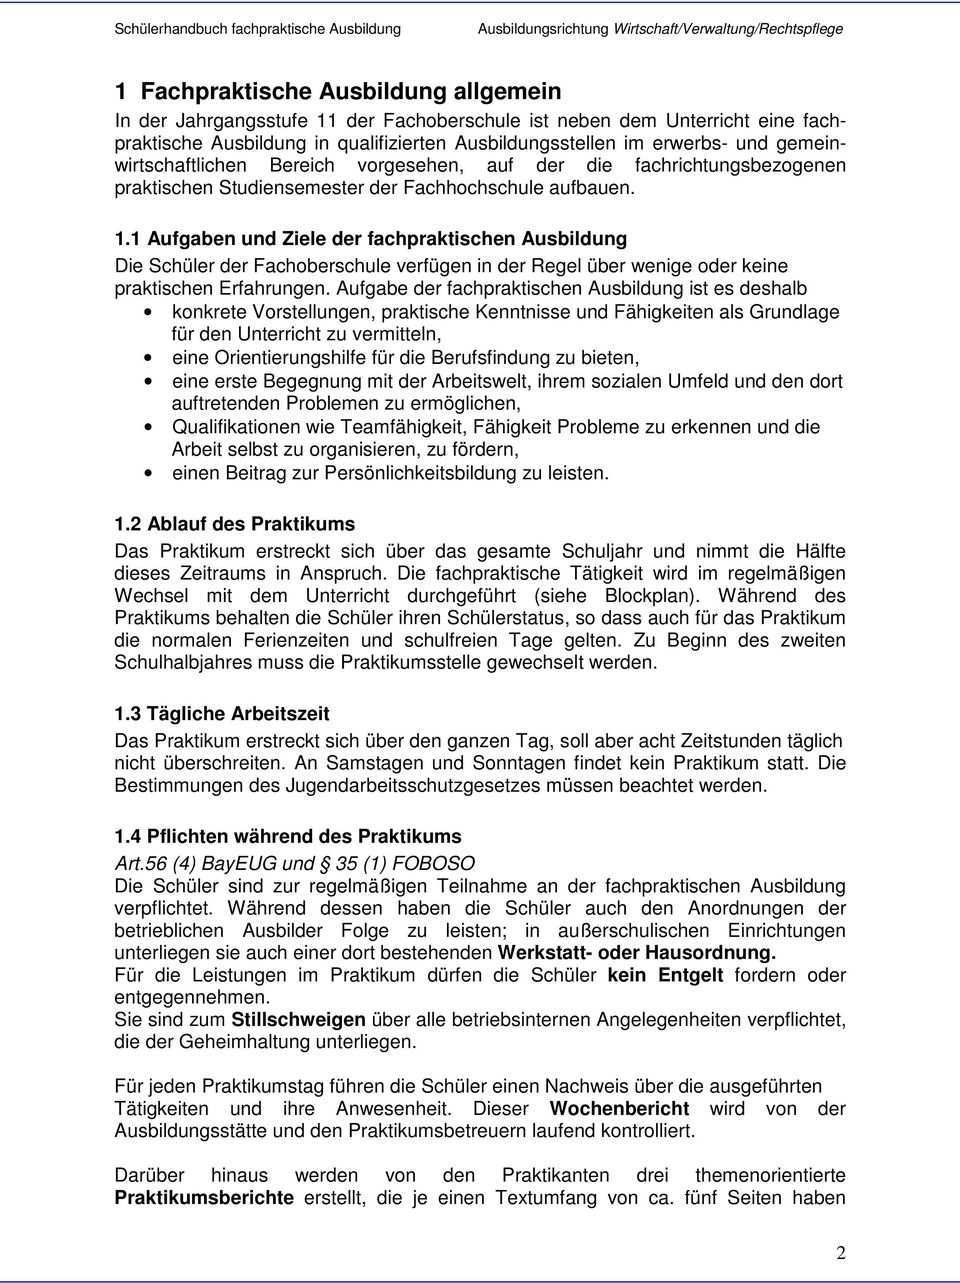 Handbuch Fur Die Fachpraktische Ausbildung In Der Ausbildungsrichtung Wirtschaft Verwaltung Rechtspflege Pdf Free Download